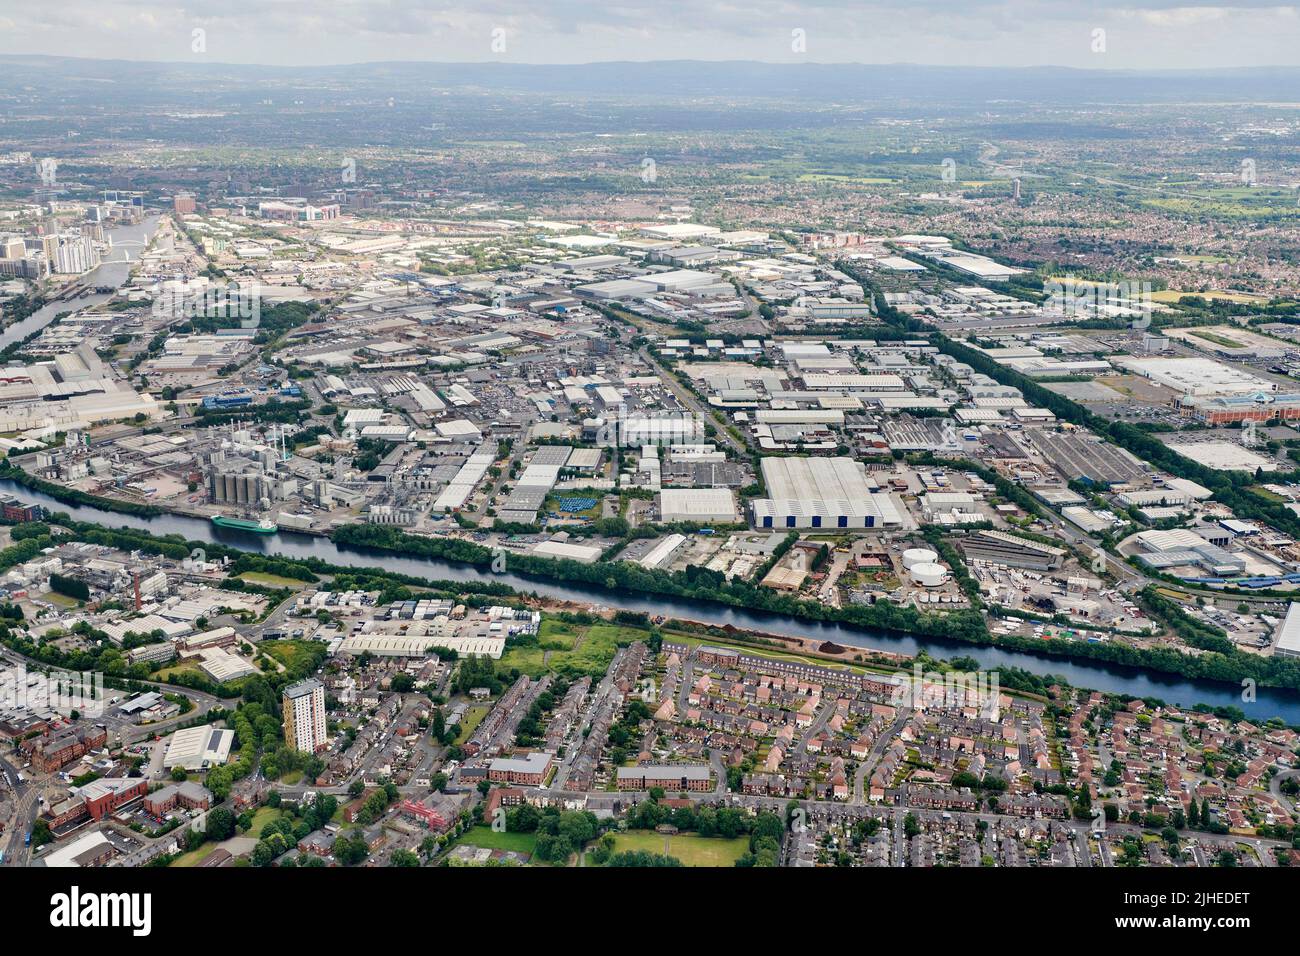 Vue aérienne de la zone industrielle de Trafford Park, Manchester, nord-ouest de l'Angleterre, Royaume-Uni Banque D'Images